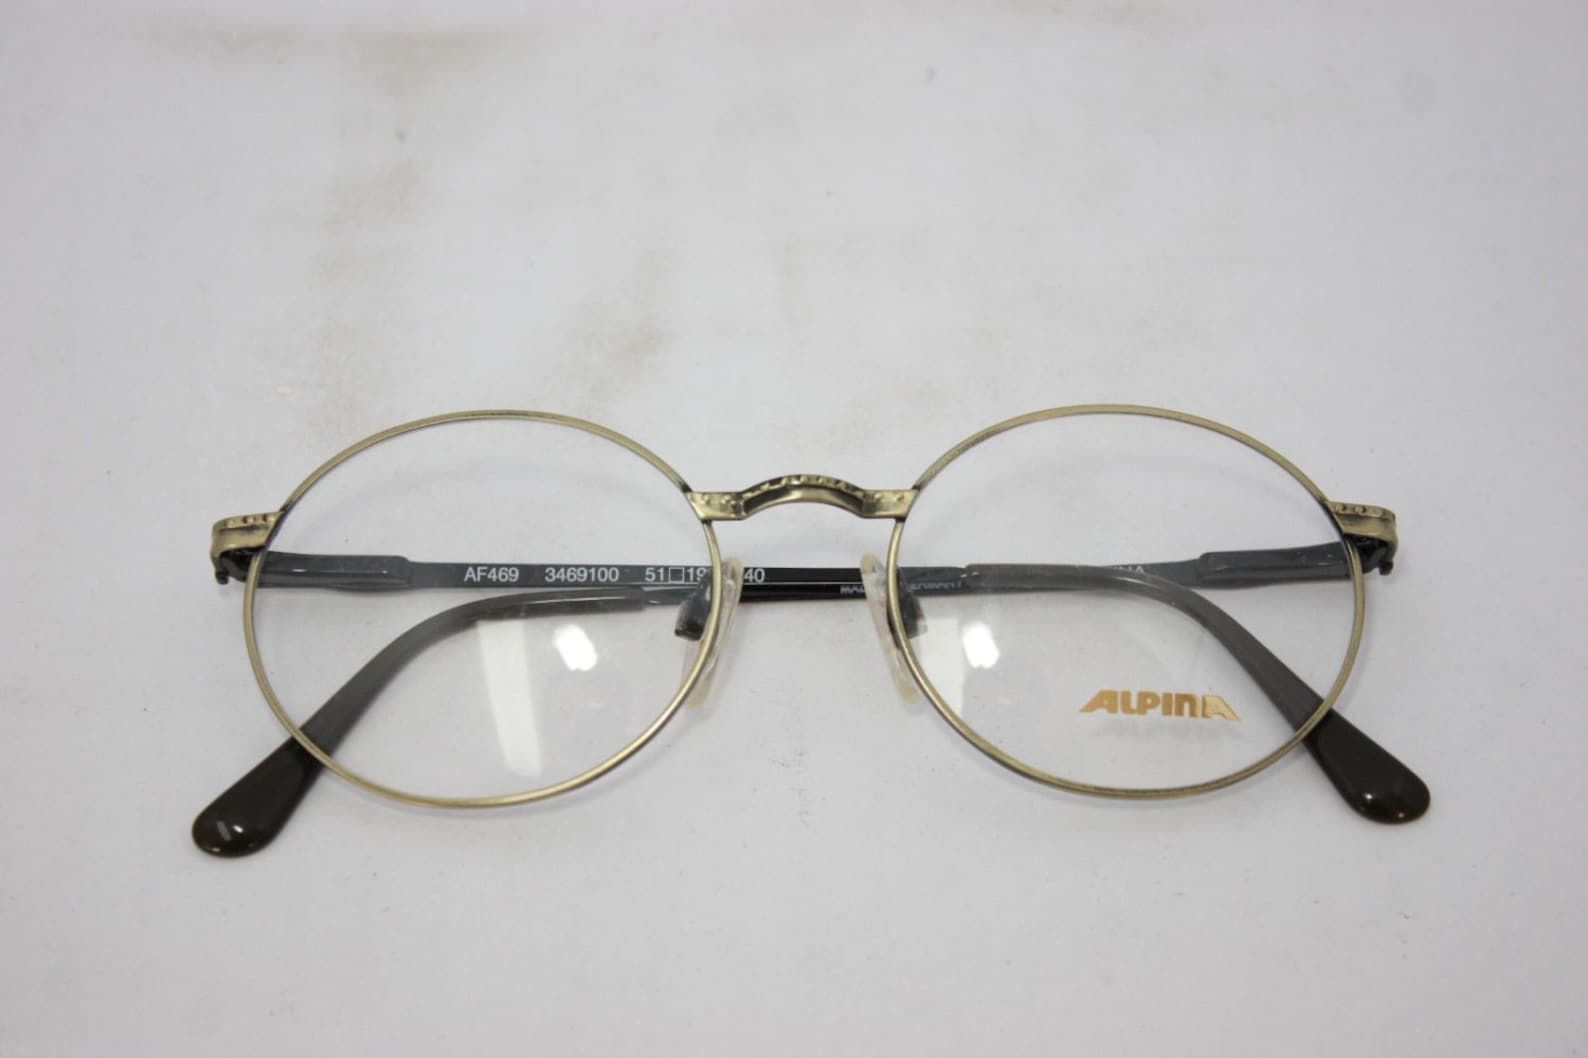 Alpina Round Oval AF469 Vintage Eyeglasses Made in Germany - Etsy Israel